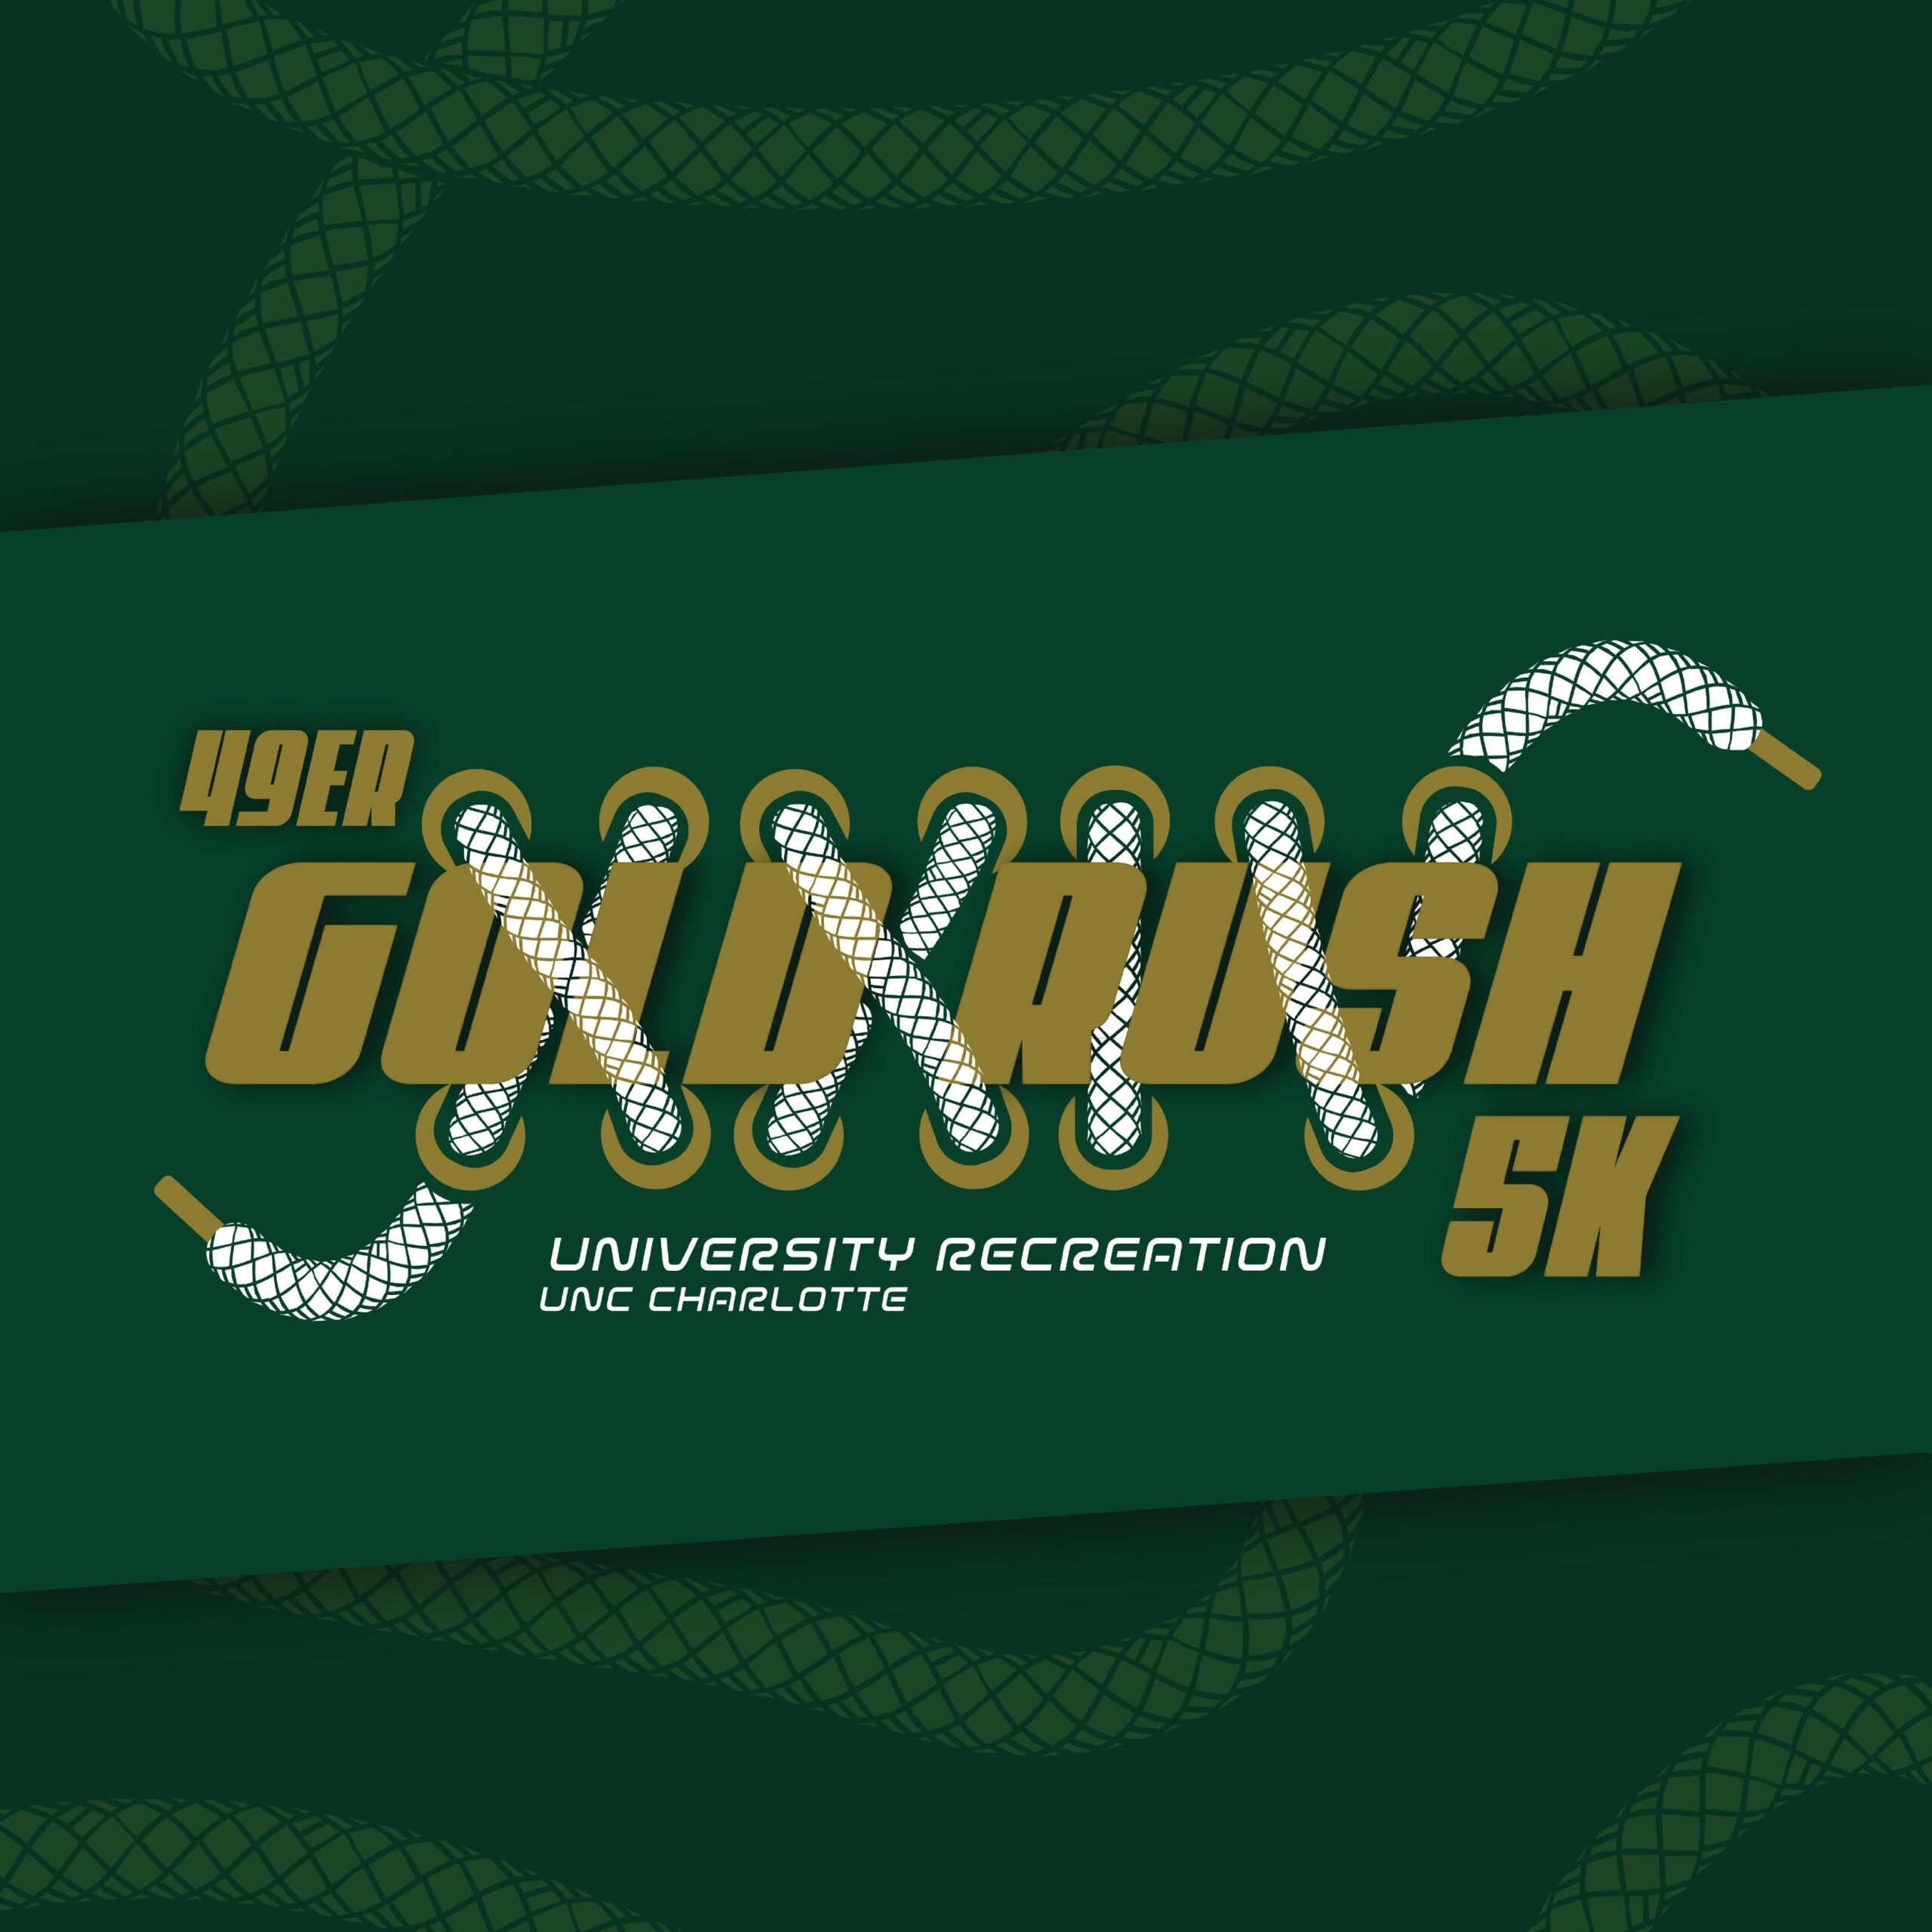 49er Gold Rush 5K logo on RaceRaves